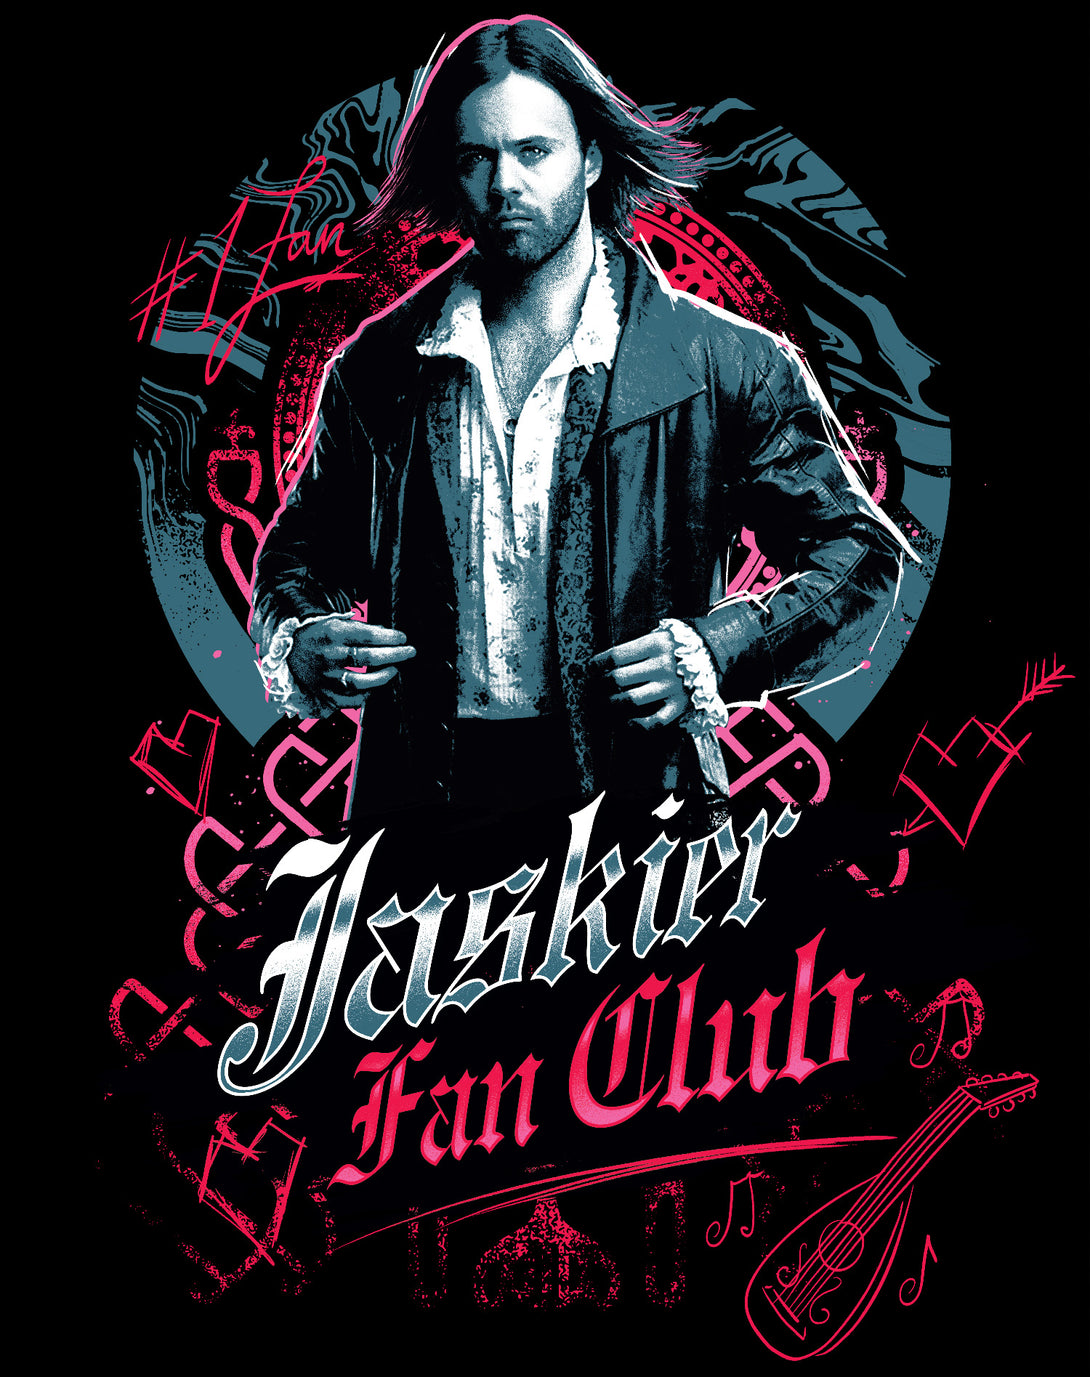 The Witcher Jaskier Splash Fan Club Official Sweatshirt Black - Urban Species Design Close Up